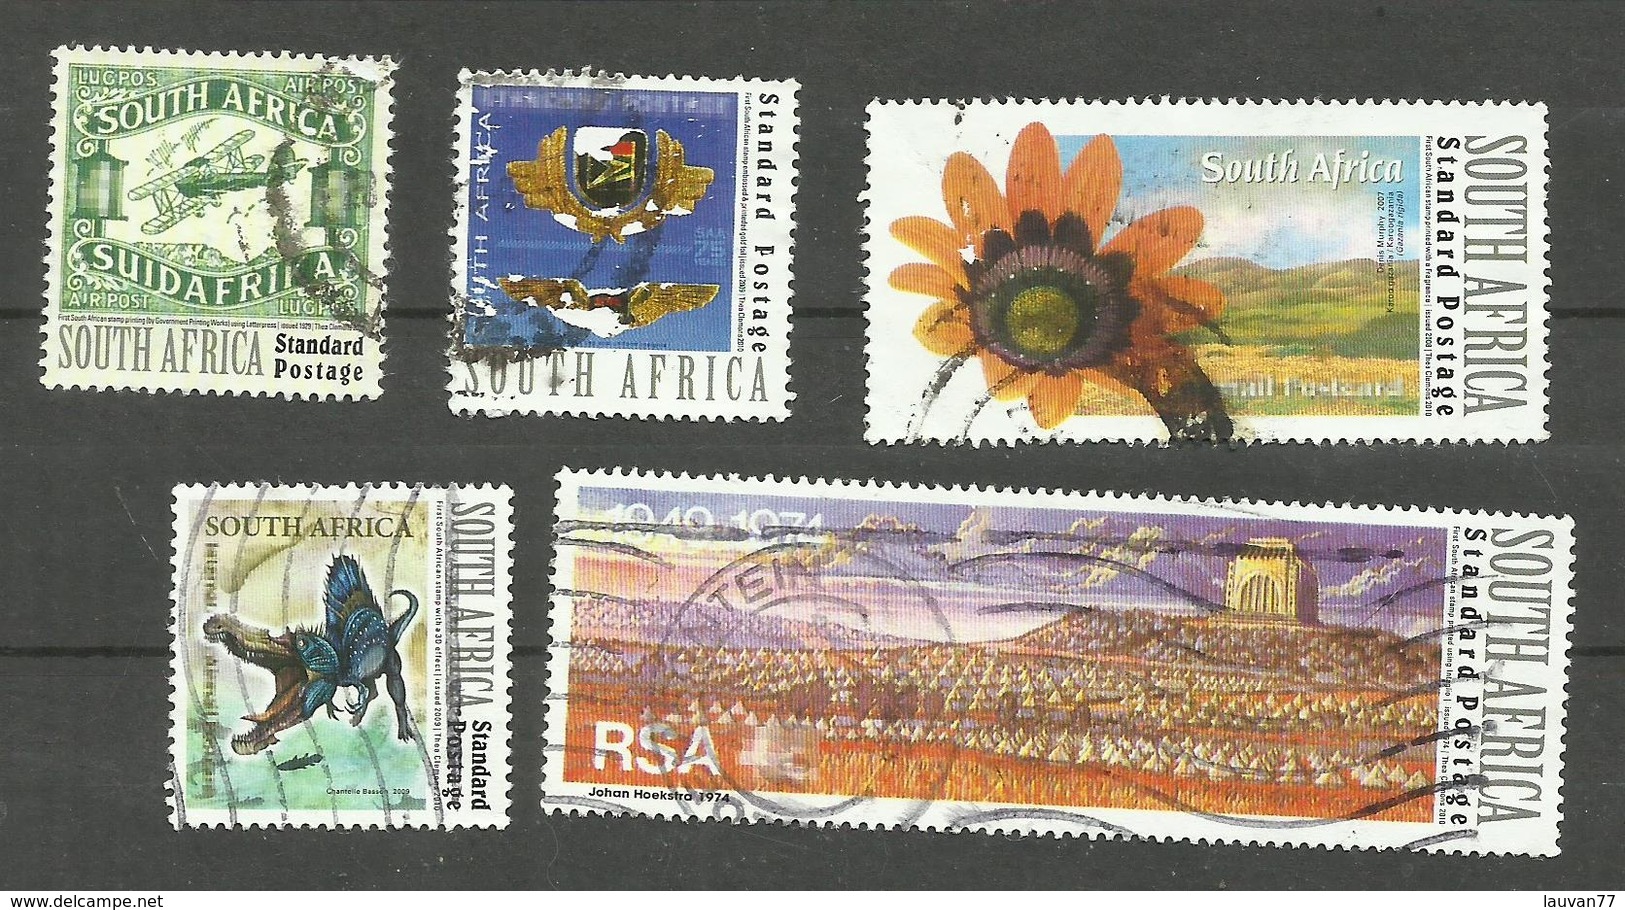 Afrique Du Sud N°1542, 1543, 1548, 1550, 1551 - Oblitérés